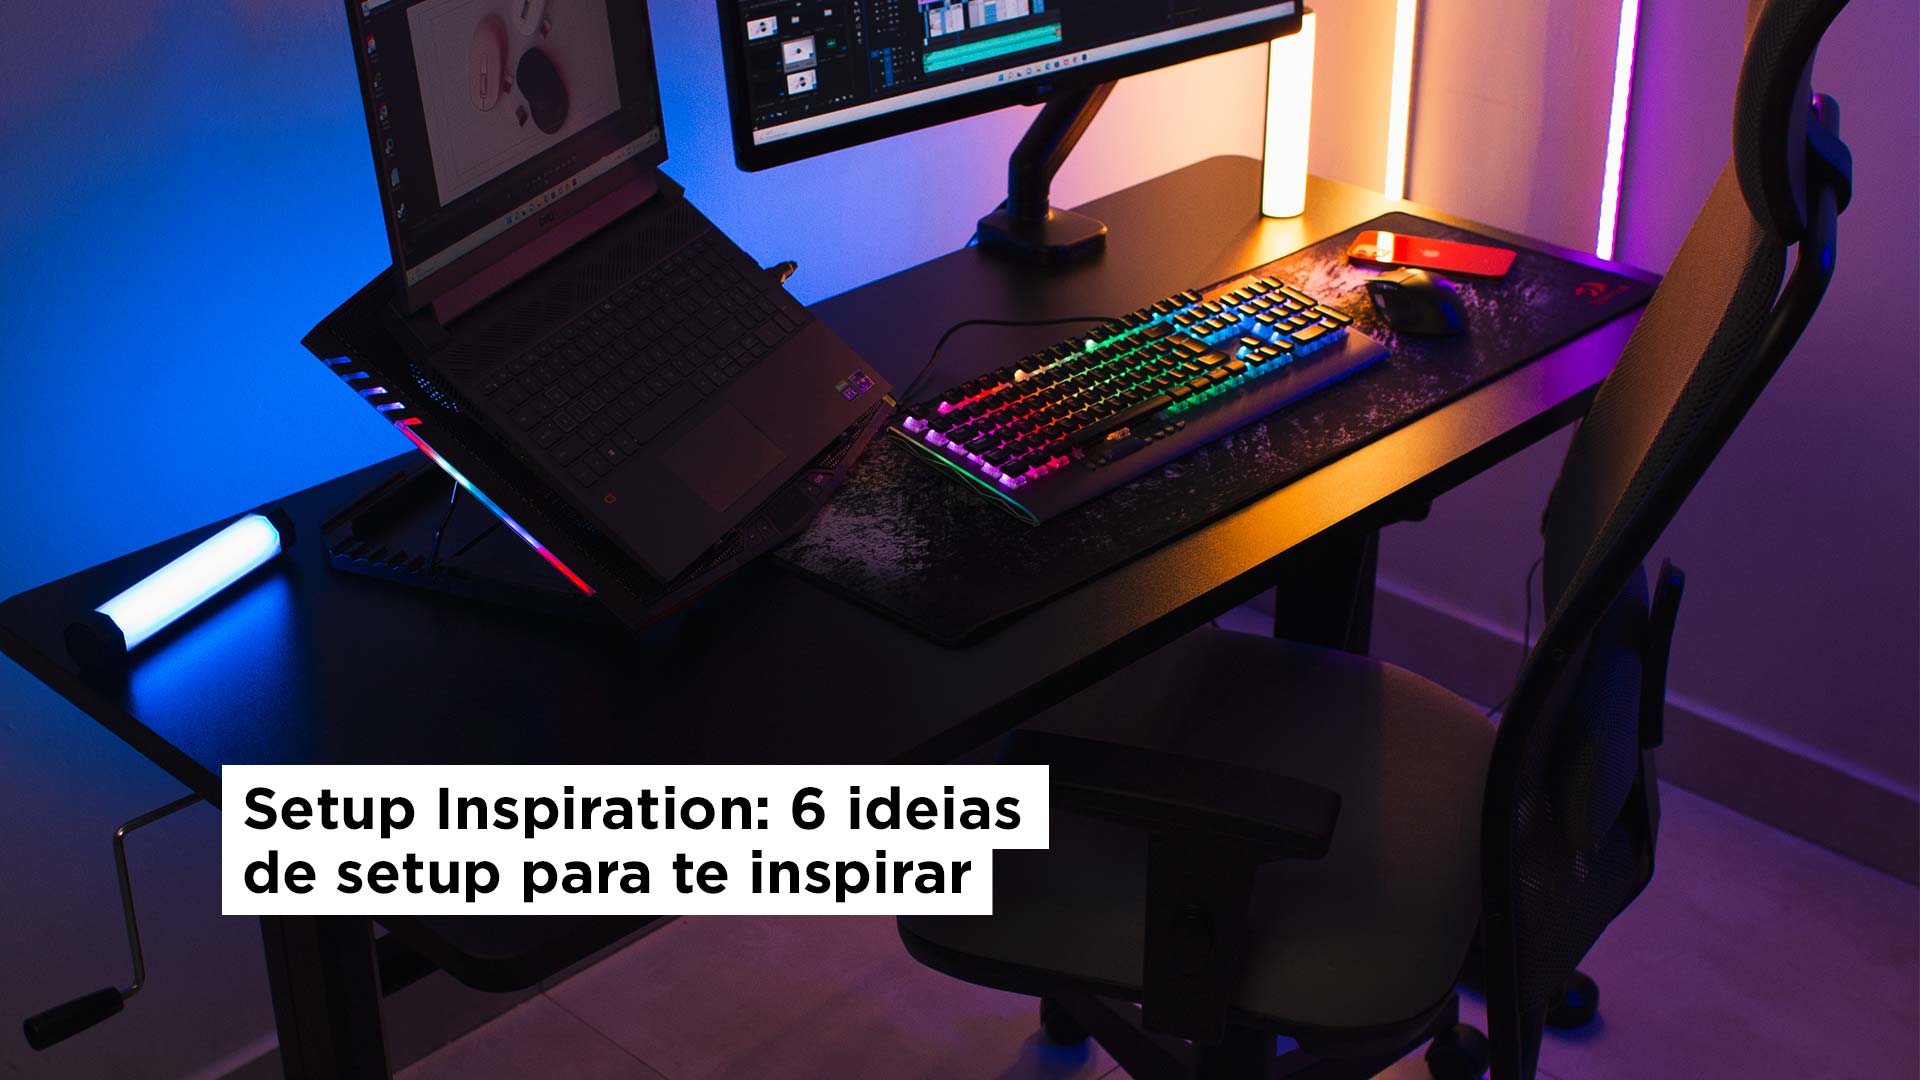 Setup Inspiration: 6 ideias de setup para te inspirar - Slikdesk